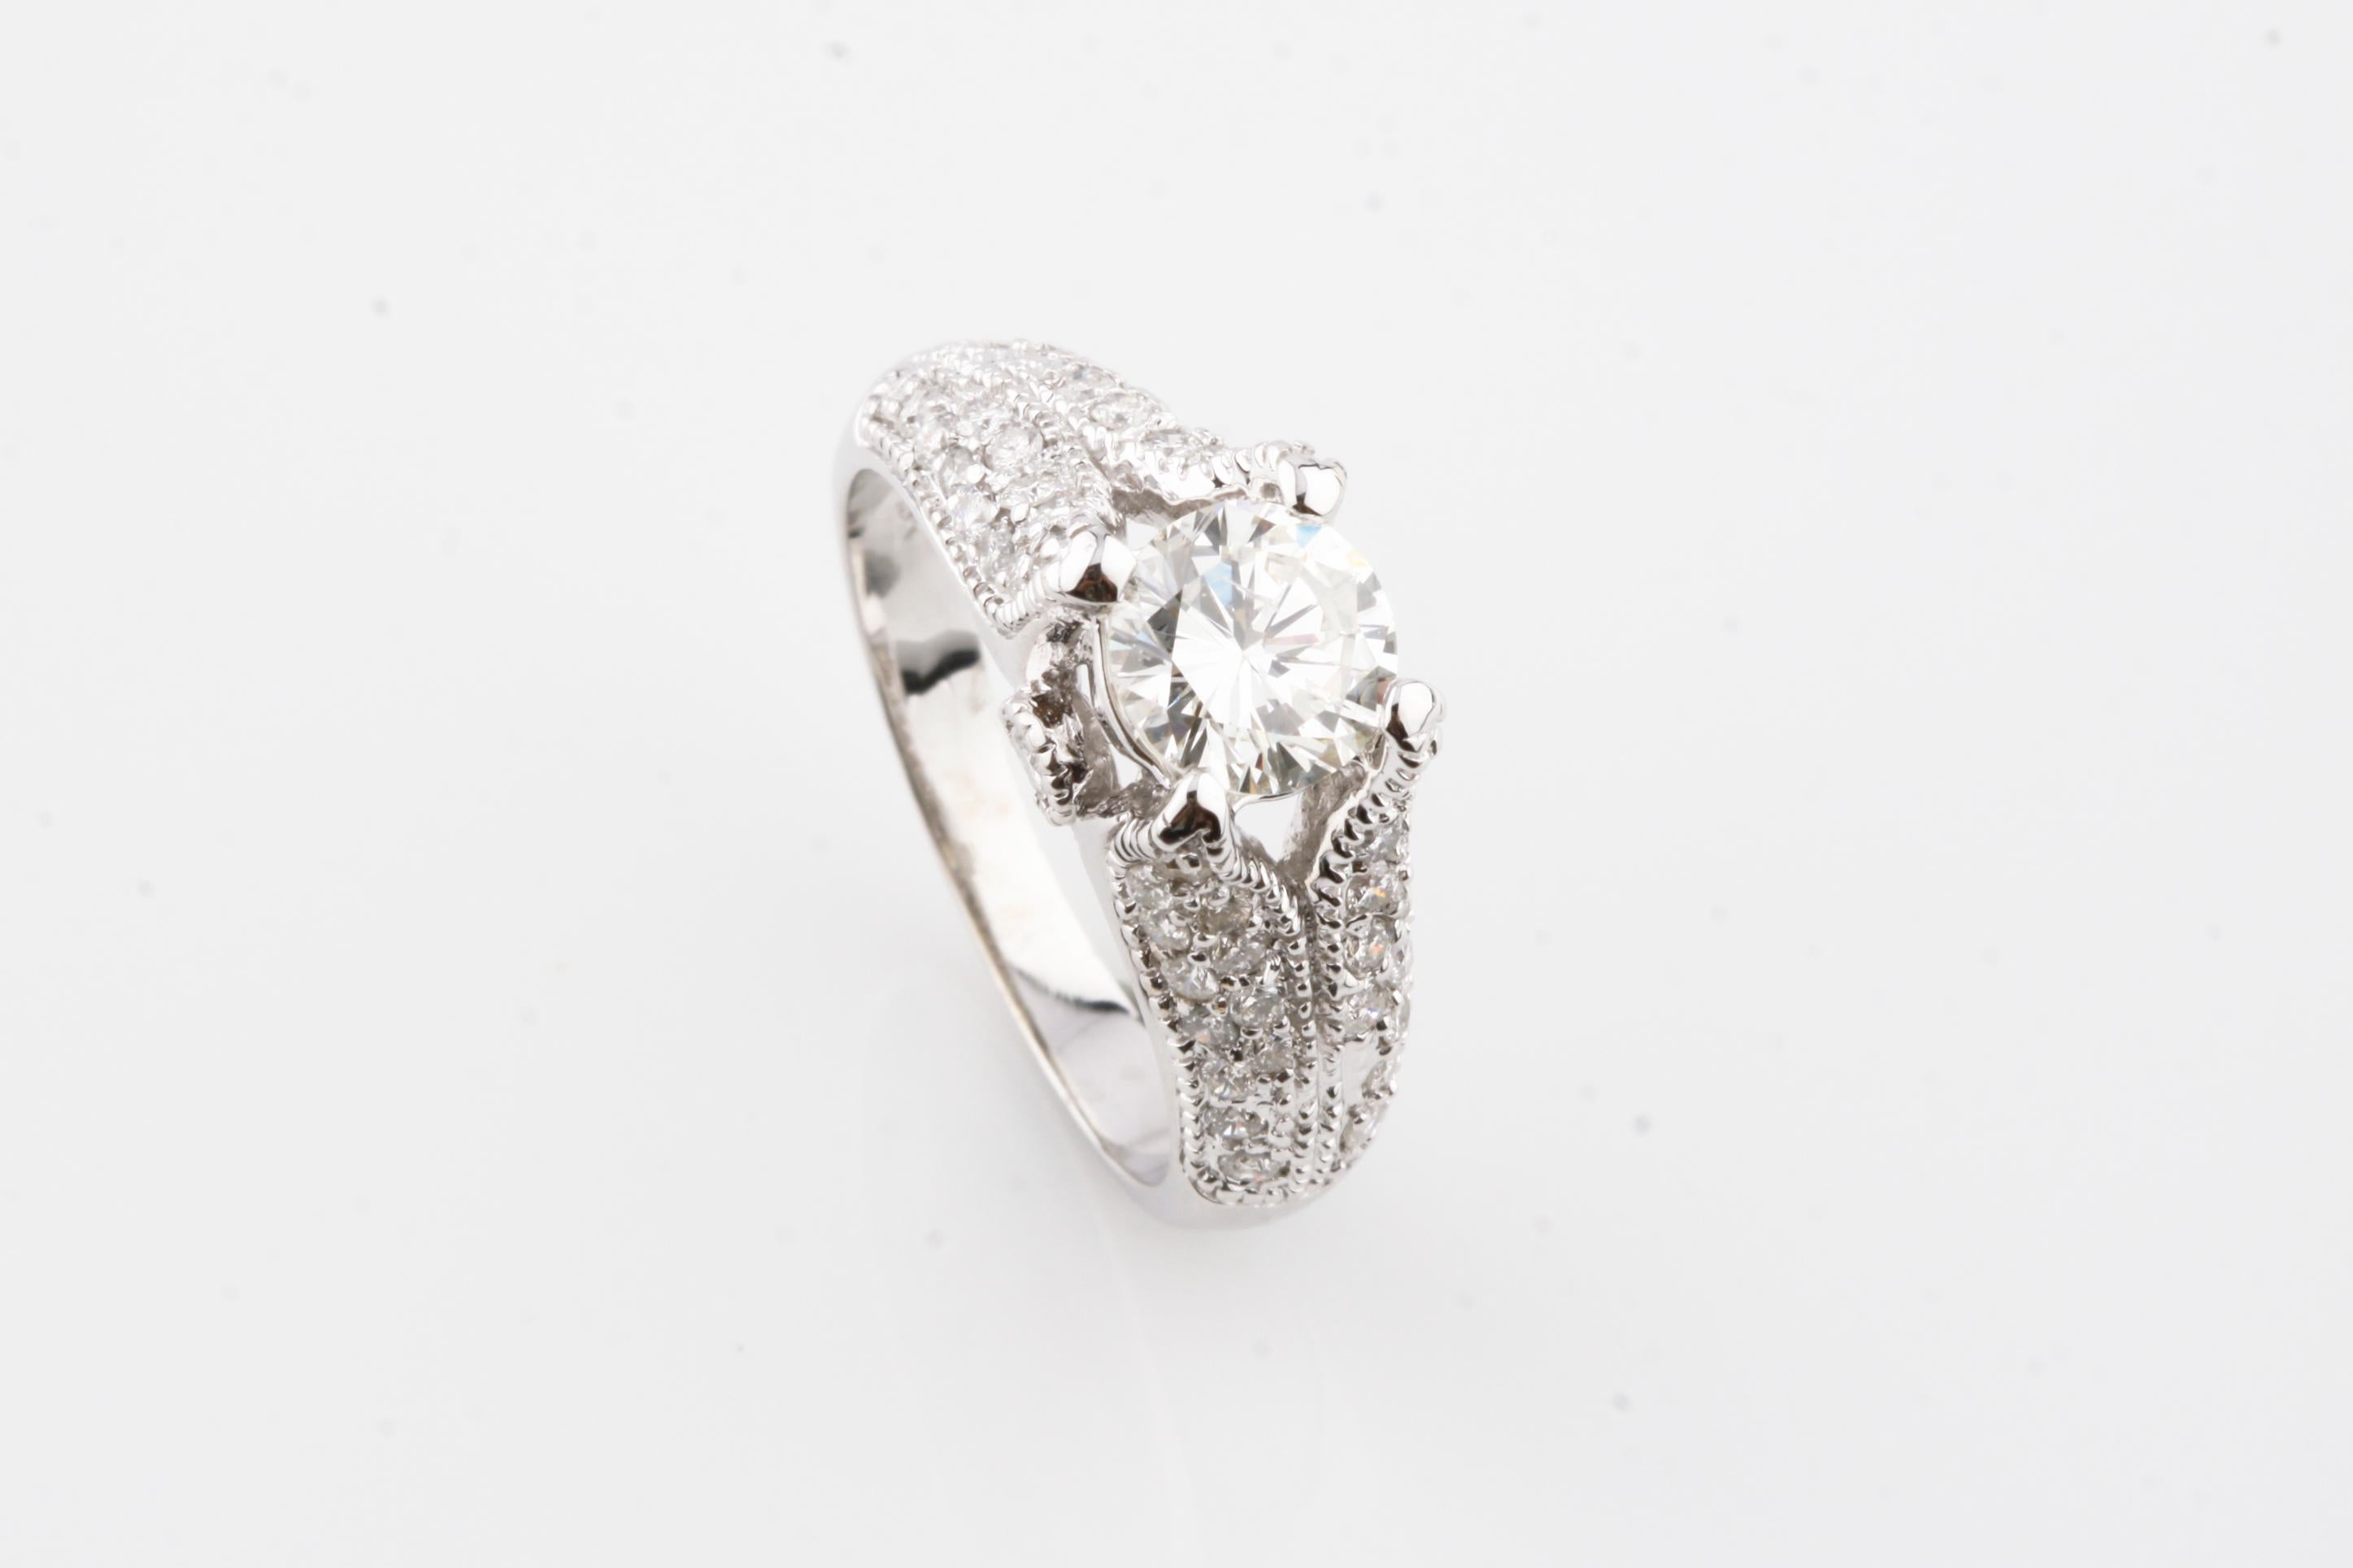 Eine elektronisch geprüfte 18KT Weißgold Damen gegossen Diamant Einheit Ring.
Der Zustand ist gut.
Mit einem diamantenen Solitär in einer Diamantengalerie, die von diamantbesetzten Schultern getragen wird
Ergänzt durch ein drei Millimeter breites